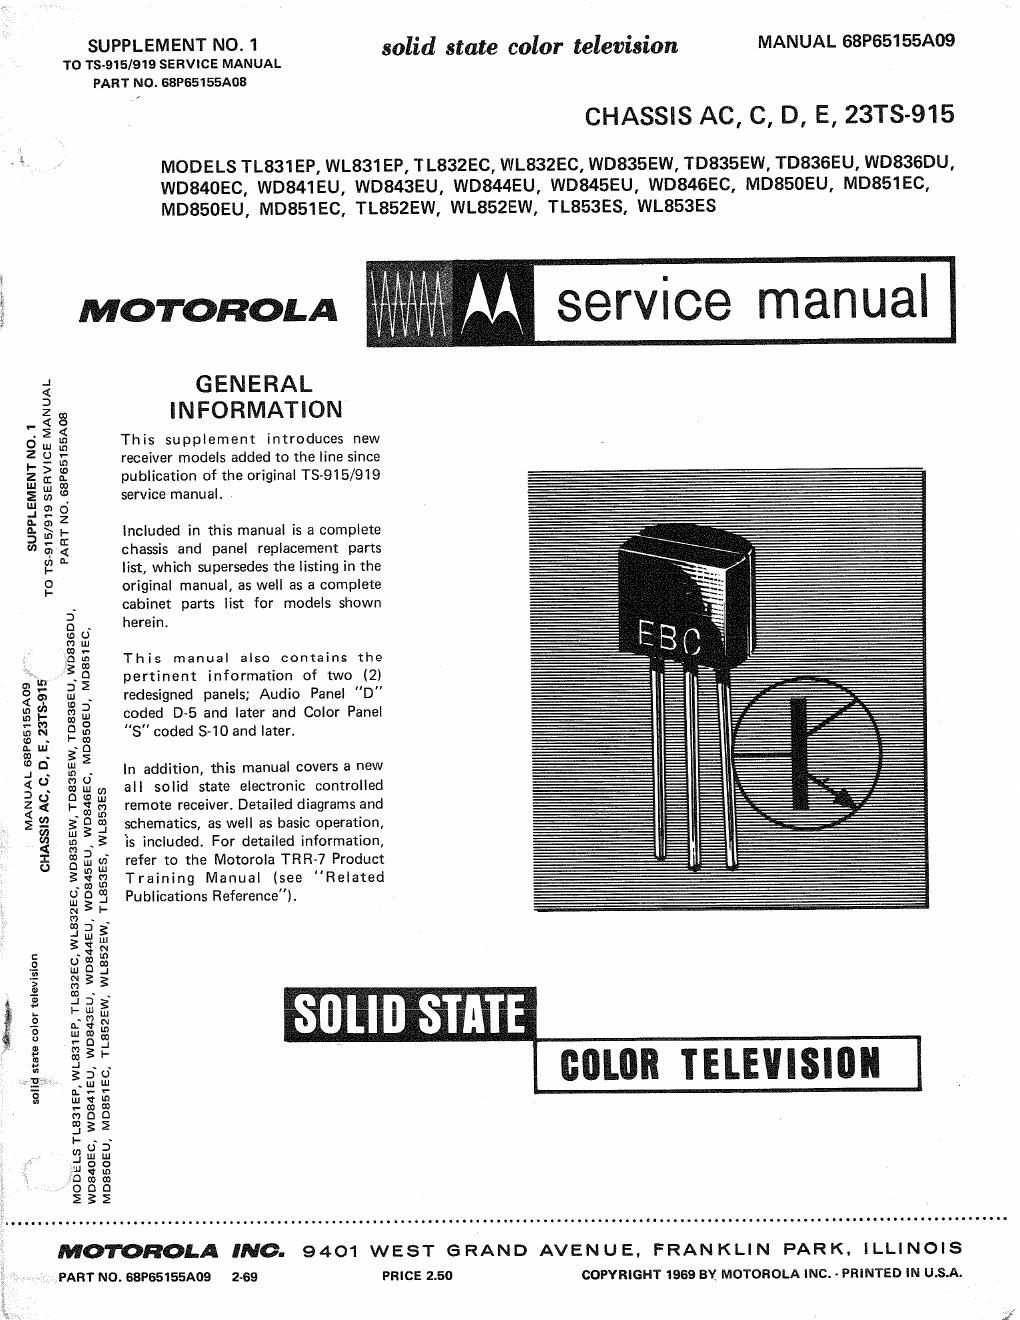 motorola tl 832 ec service manual